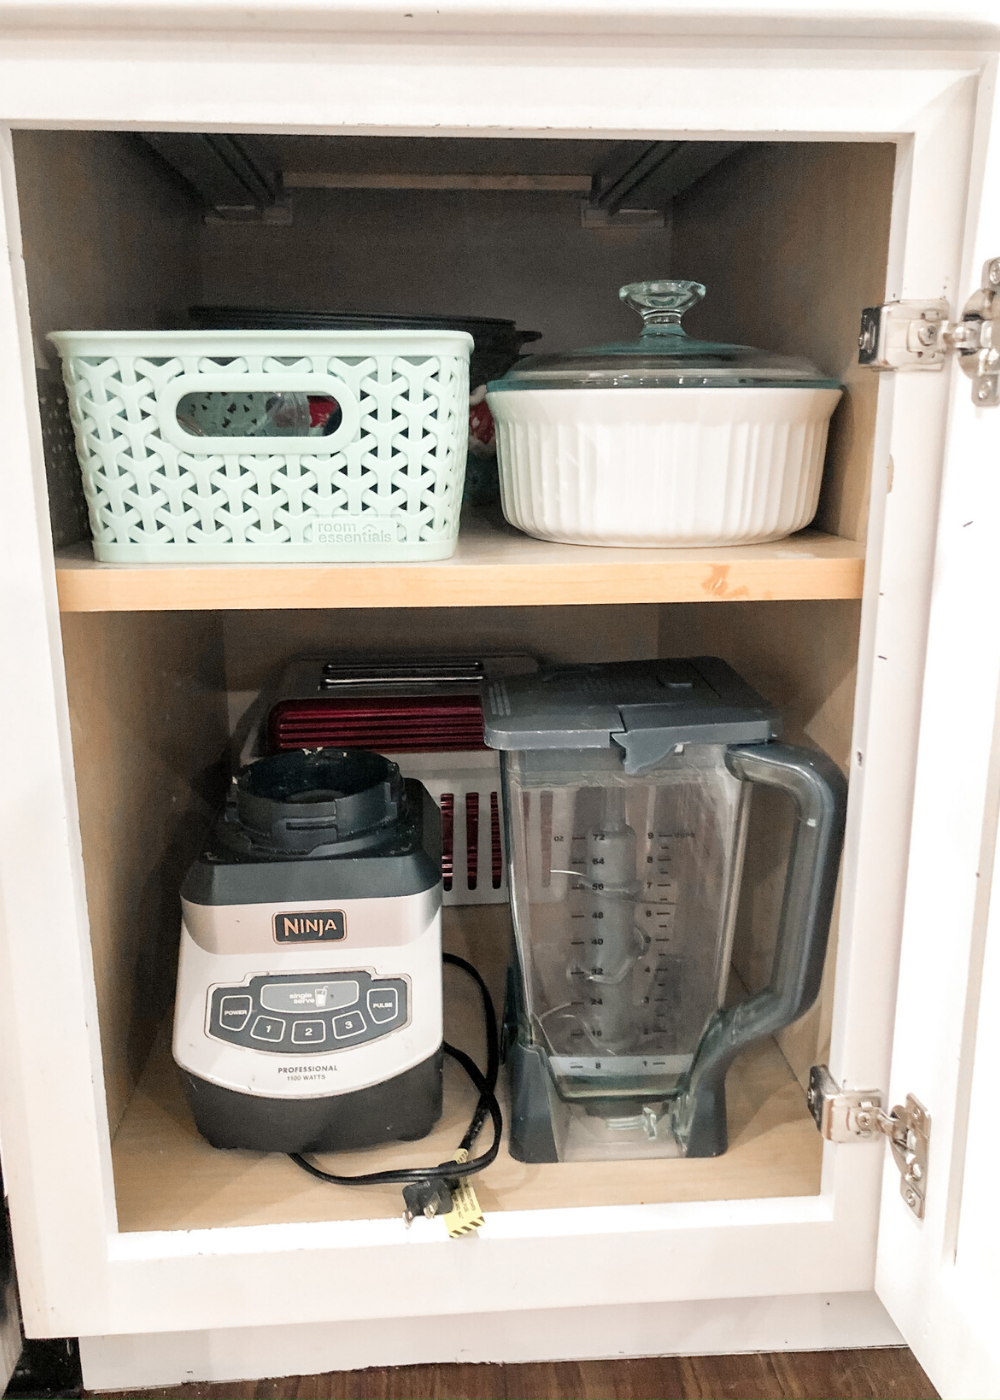 Organized Kitchen Tour - The Simply Organized Home